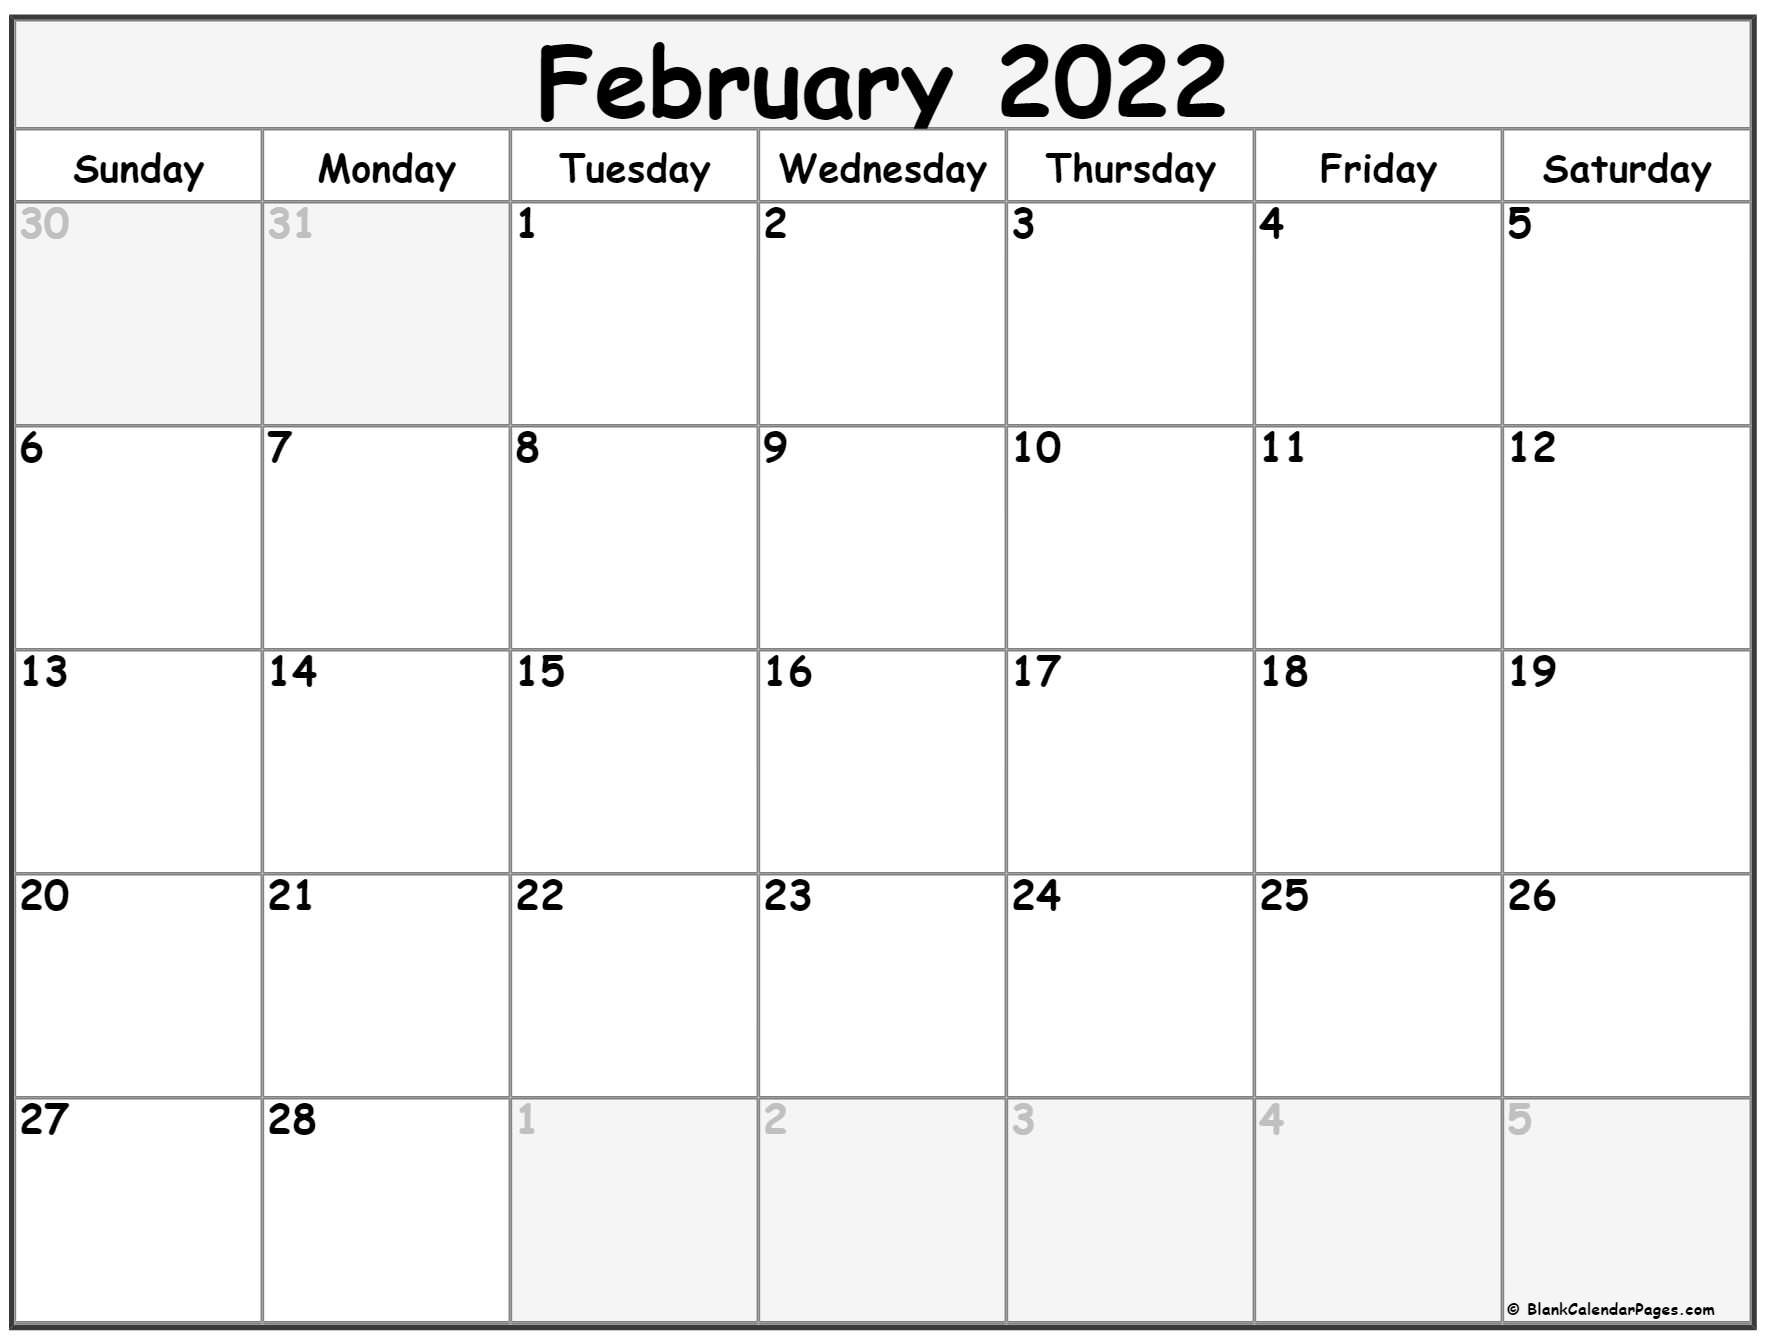 Get February 1 2022 Calendar